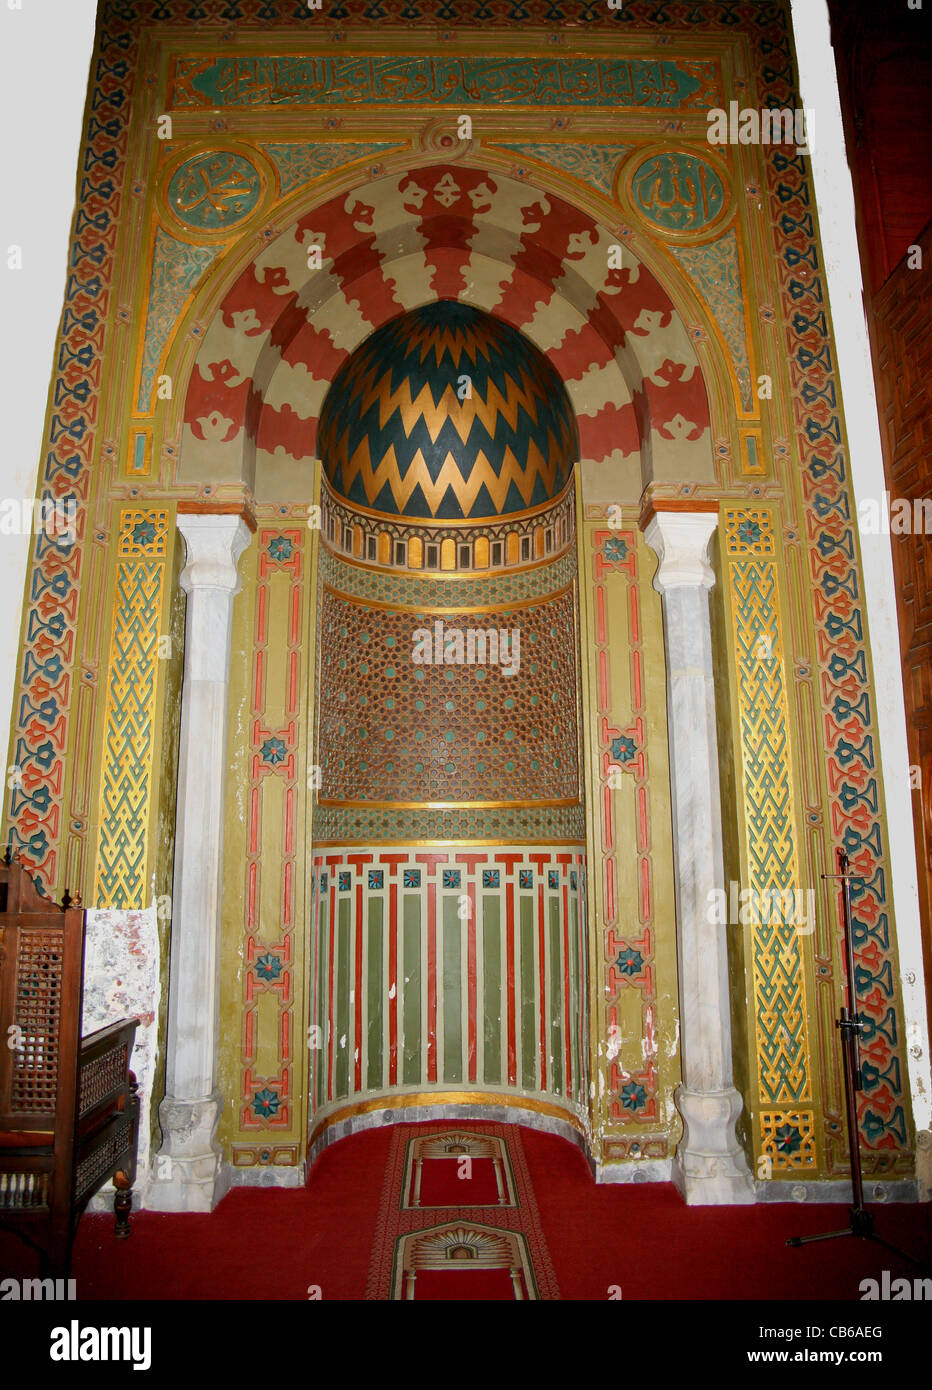 Il mihrab nella Moschea di AMR, fu originariamente costruito nel 642 d.C., come il centro della capitale di nuova fondazione dell'Egitto, Fustat (Cairo). Foto Stock